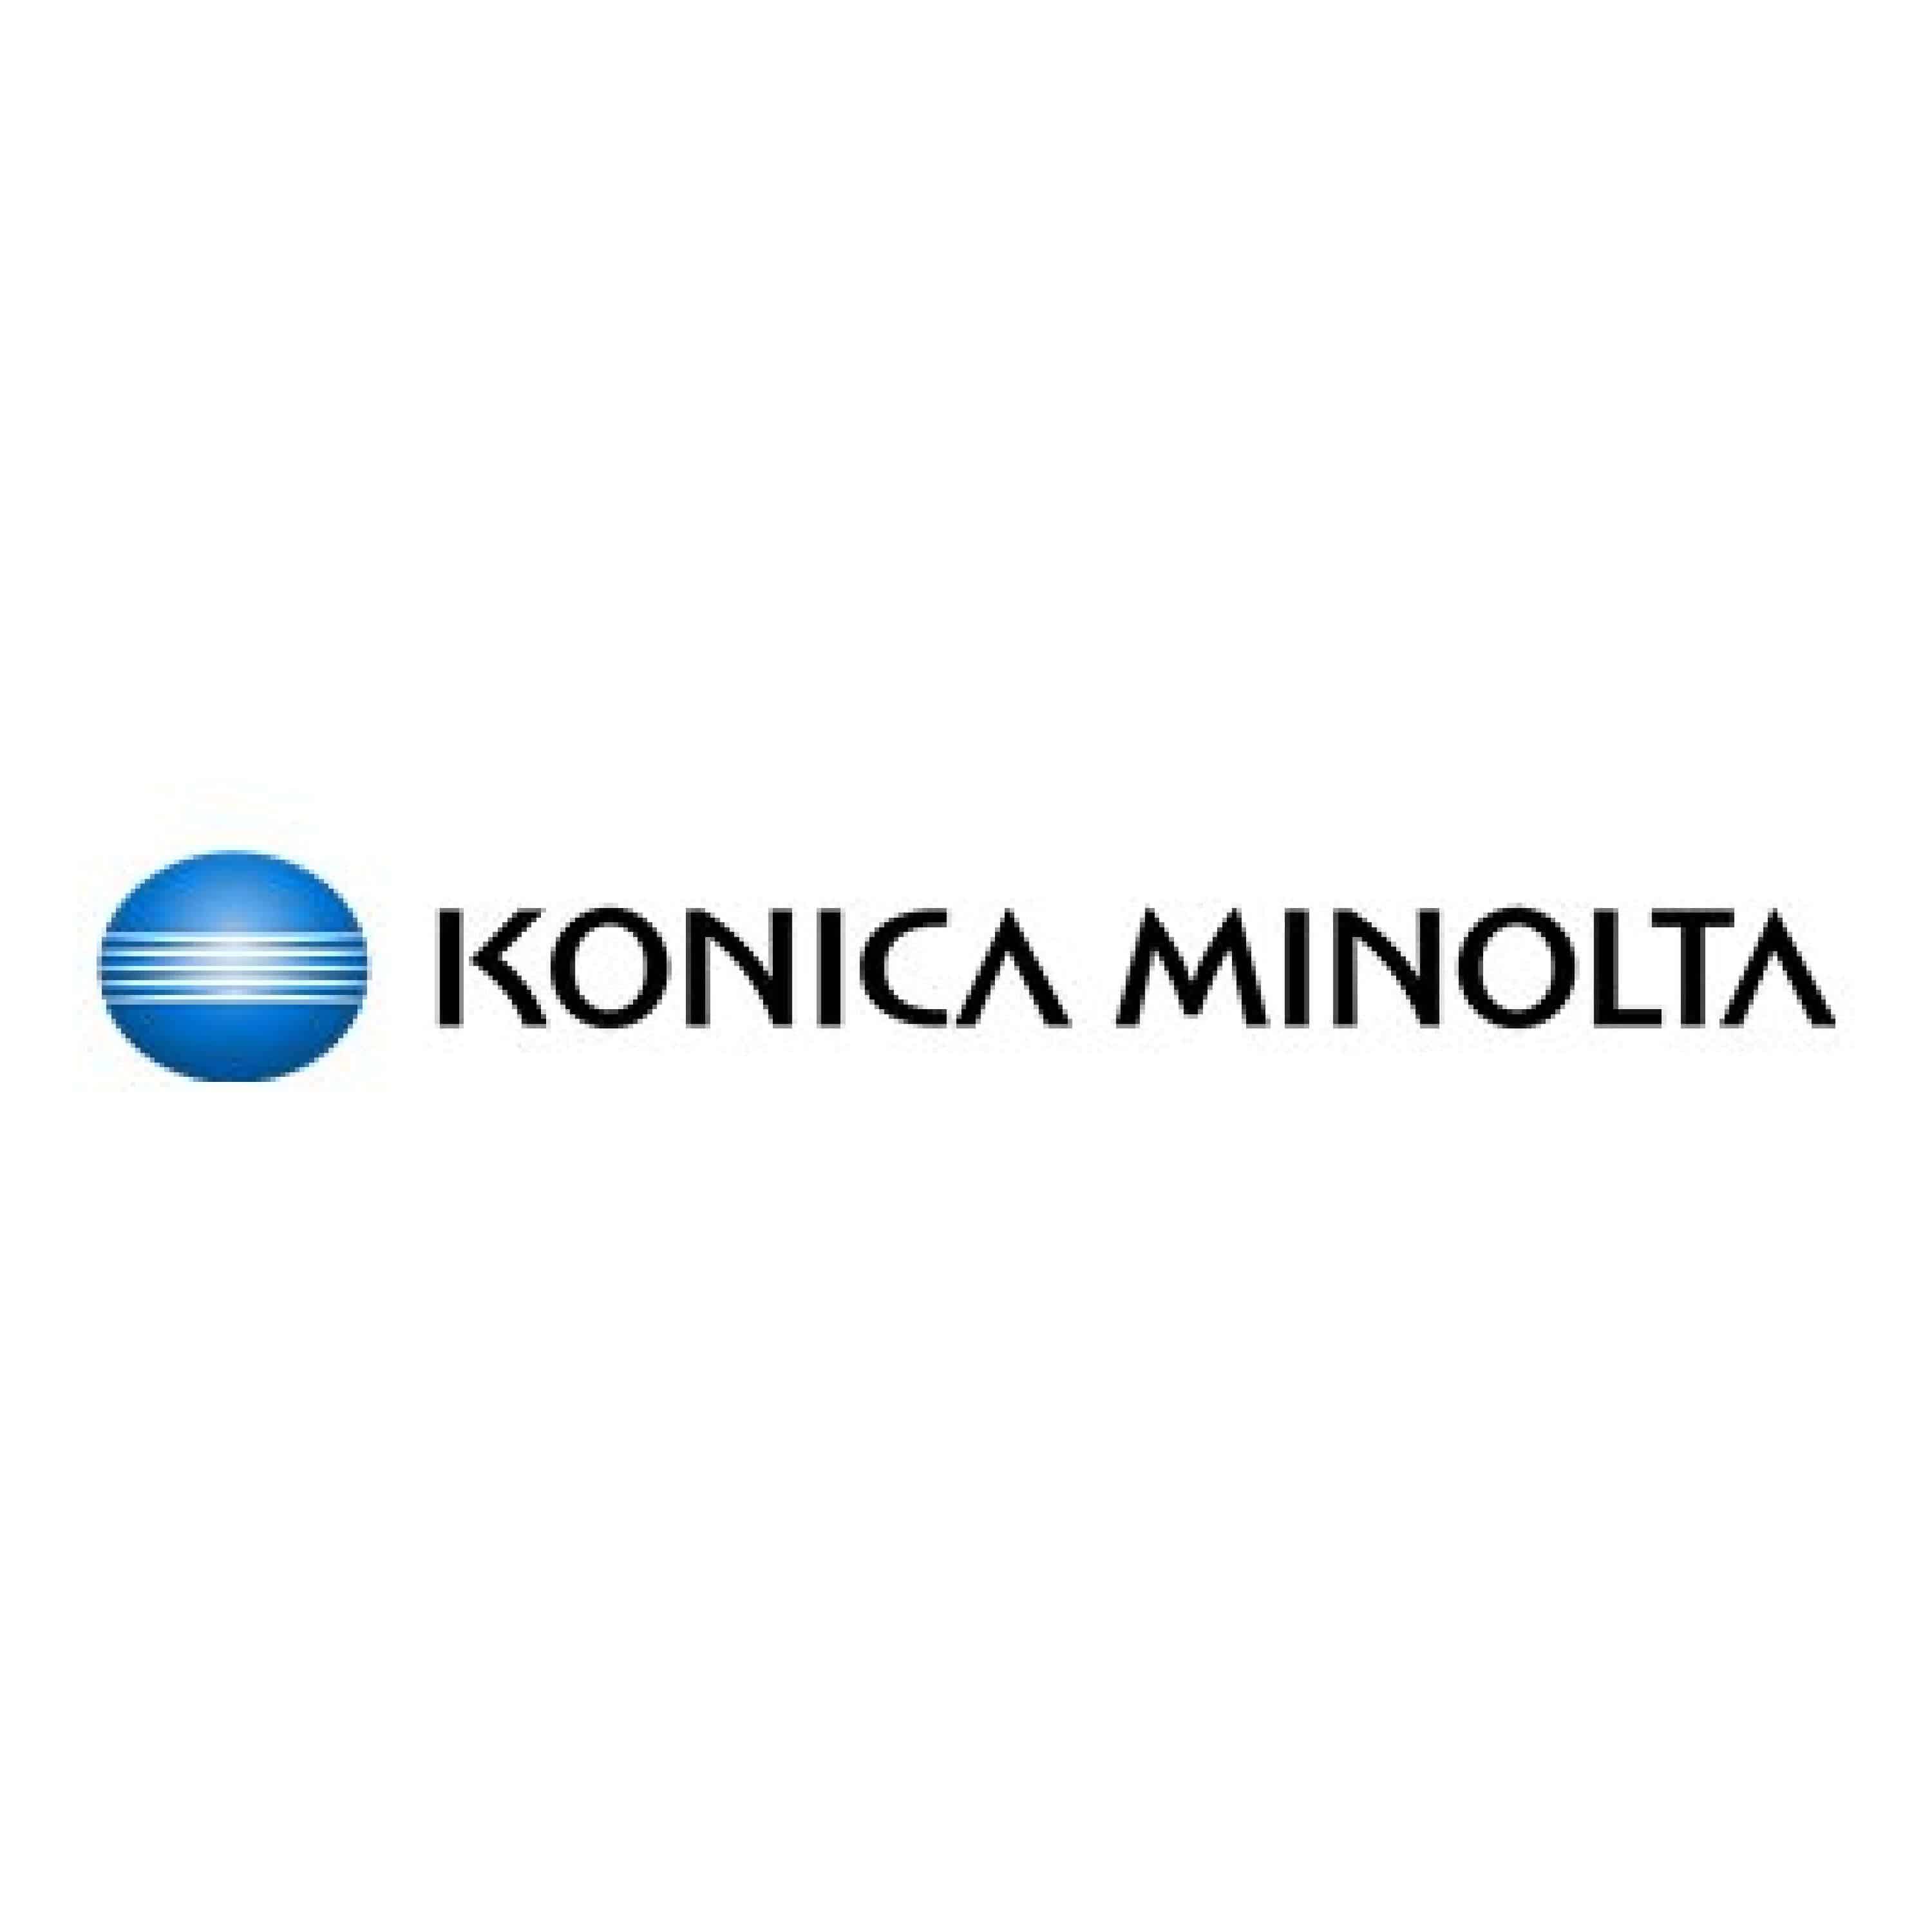 Original Toner Konica Minolta Bizhub Press C 3080 (A3VX450 / TN-619C) Cyan